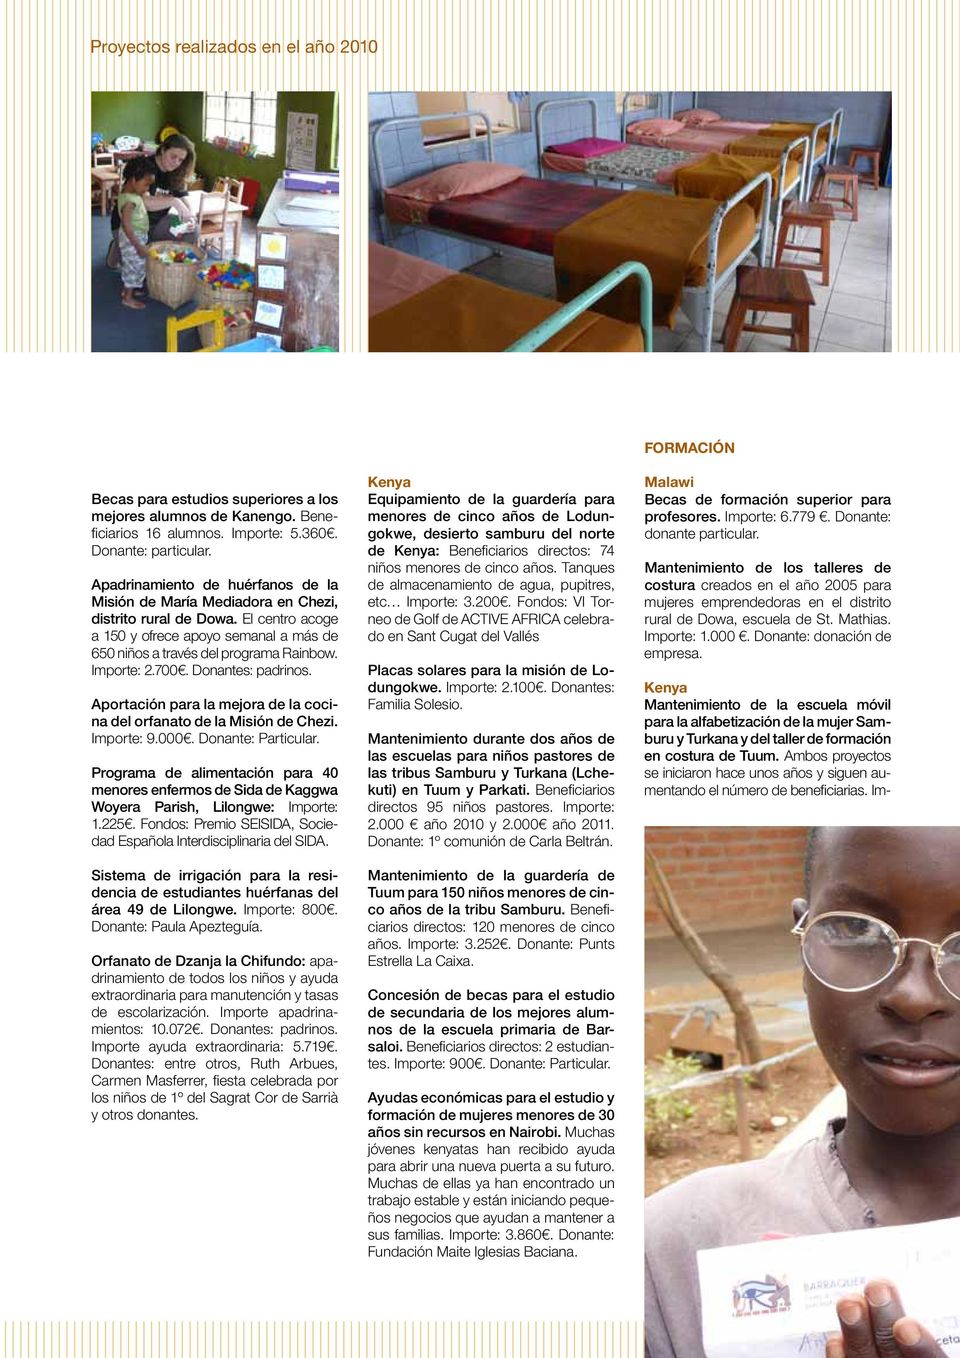 700. Donantes: padrinos. Aportación para la mejora de la cocina del orfanato de la Misión de Chezi. Importe: 9.000. Donante: Particular.